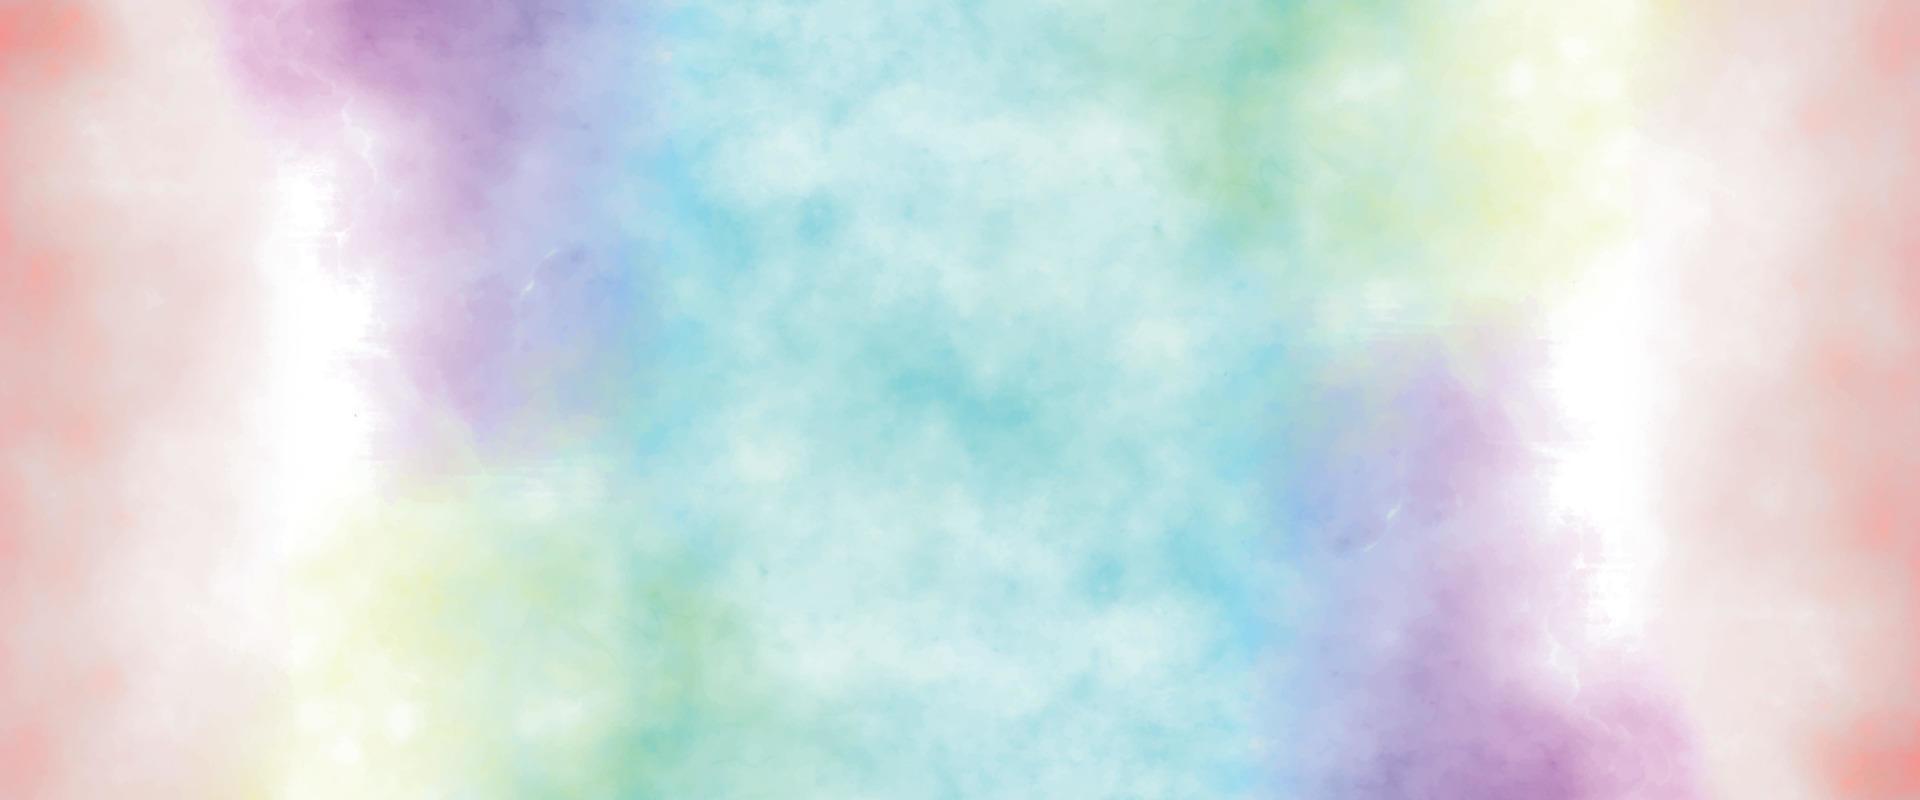 pintura colorida da arte do grunge. efeito da luz quente colorida da nuvem de nuvens do pôr do sol no fundo do céu do pôr do sol. fundo ardente. projeto de fundo abstrato aquarela grunge. vetor